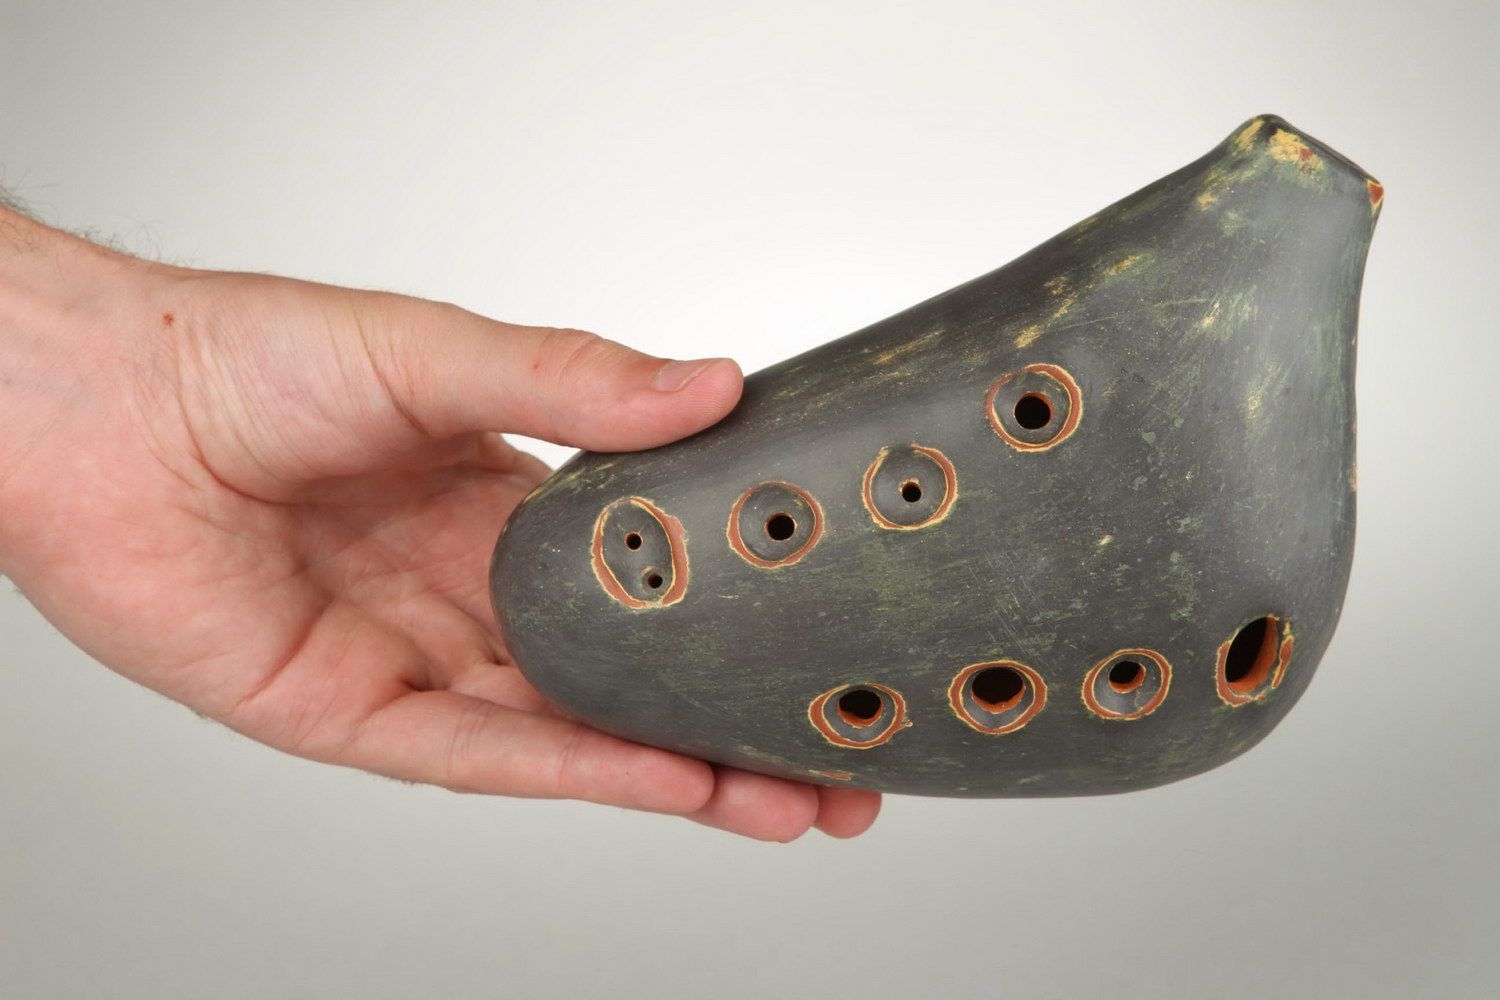 Ocarina, globular flute made of clay with 8 holes photo 3